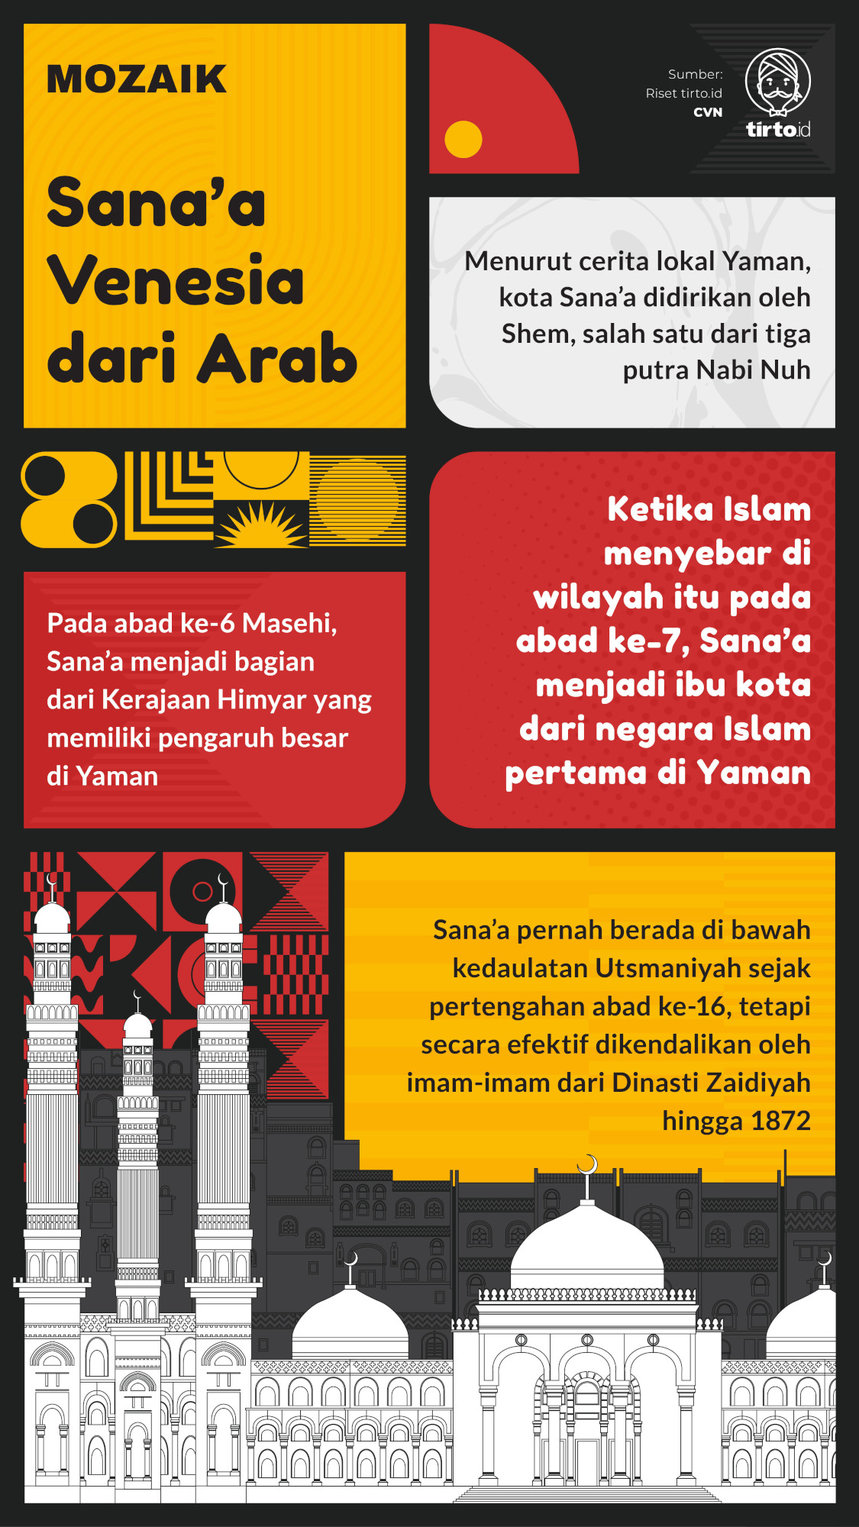 Infografik Mozaik Sanaa venesia dari Arab